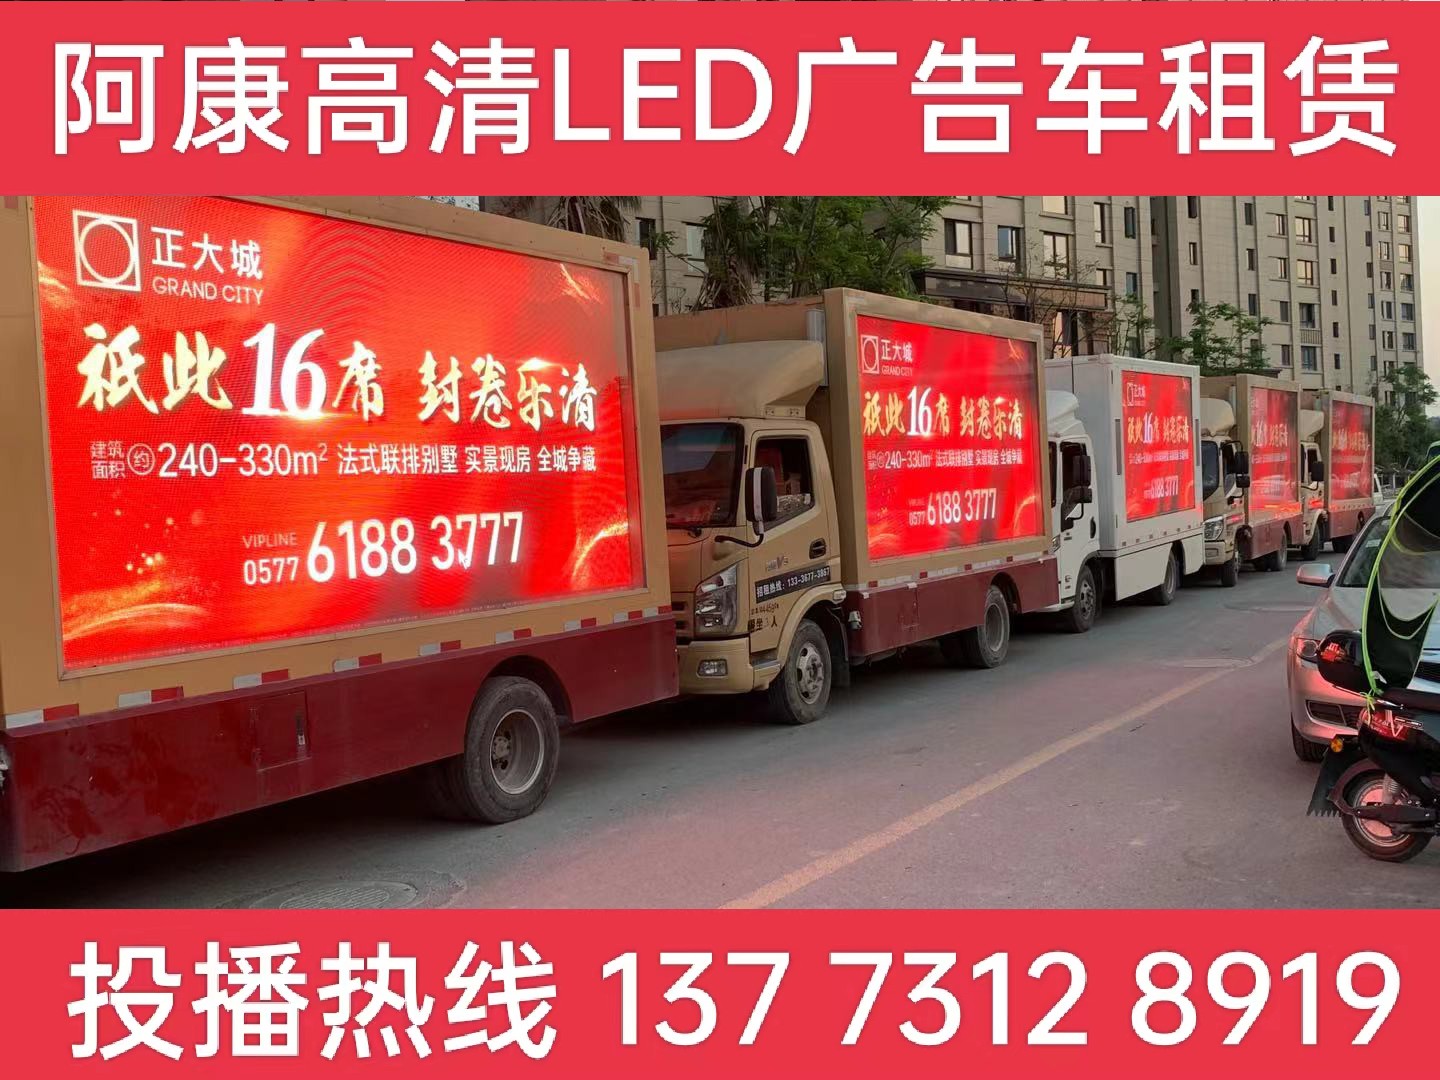 高港区LED广告车出租